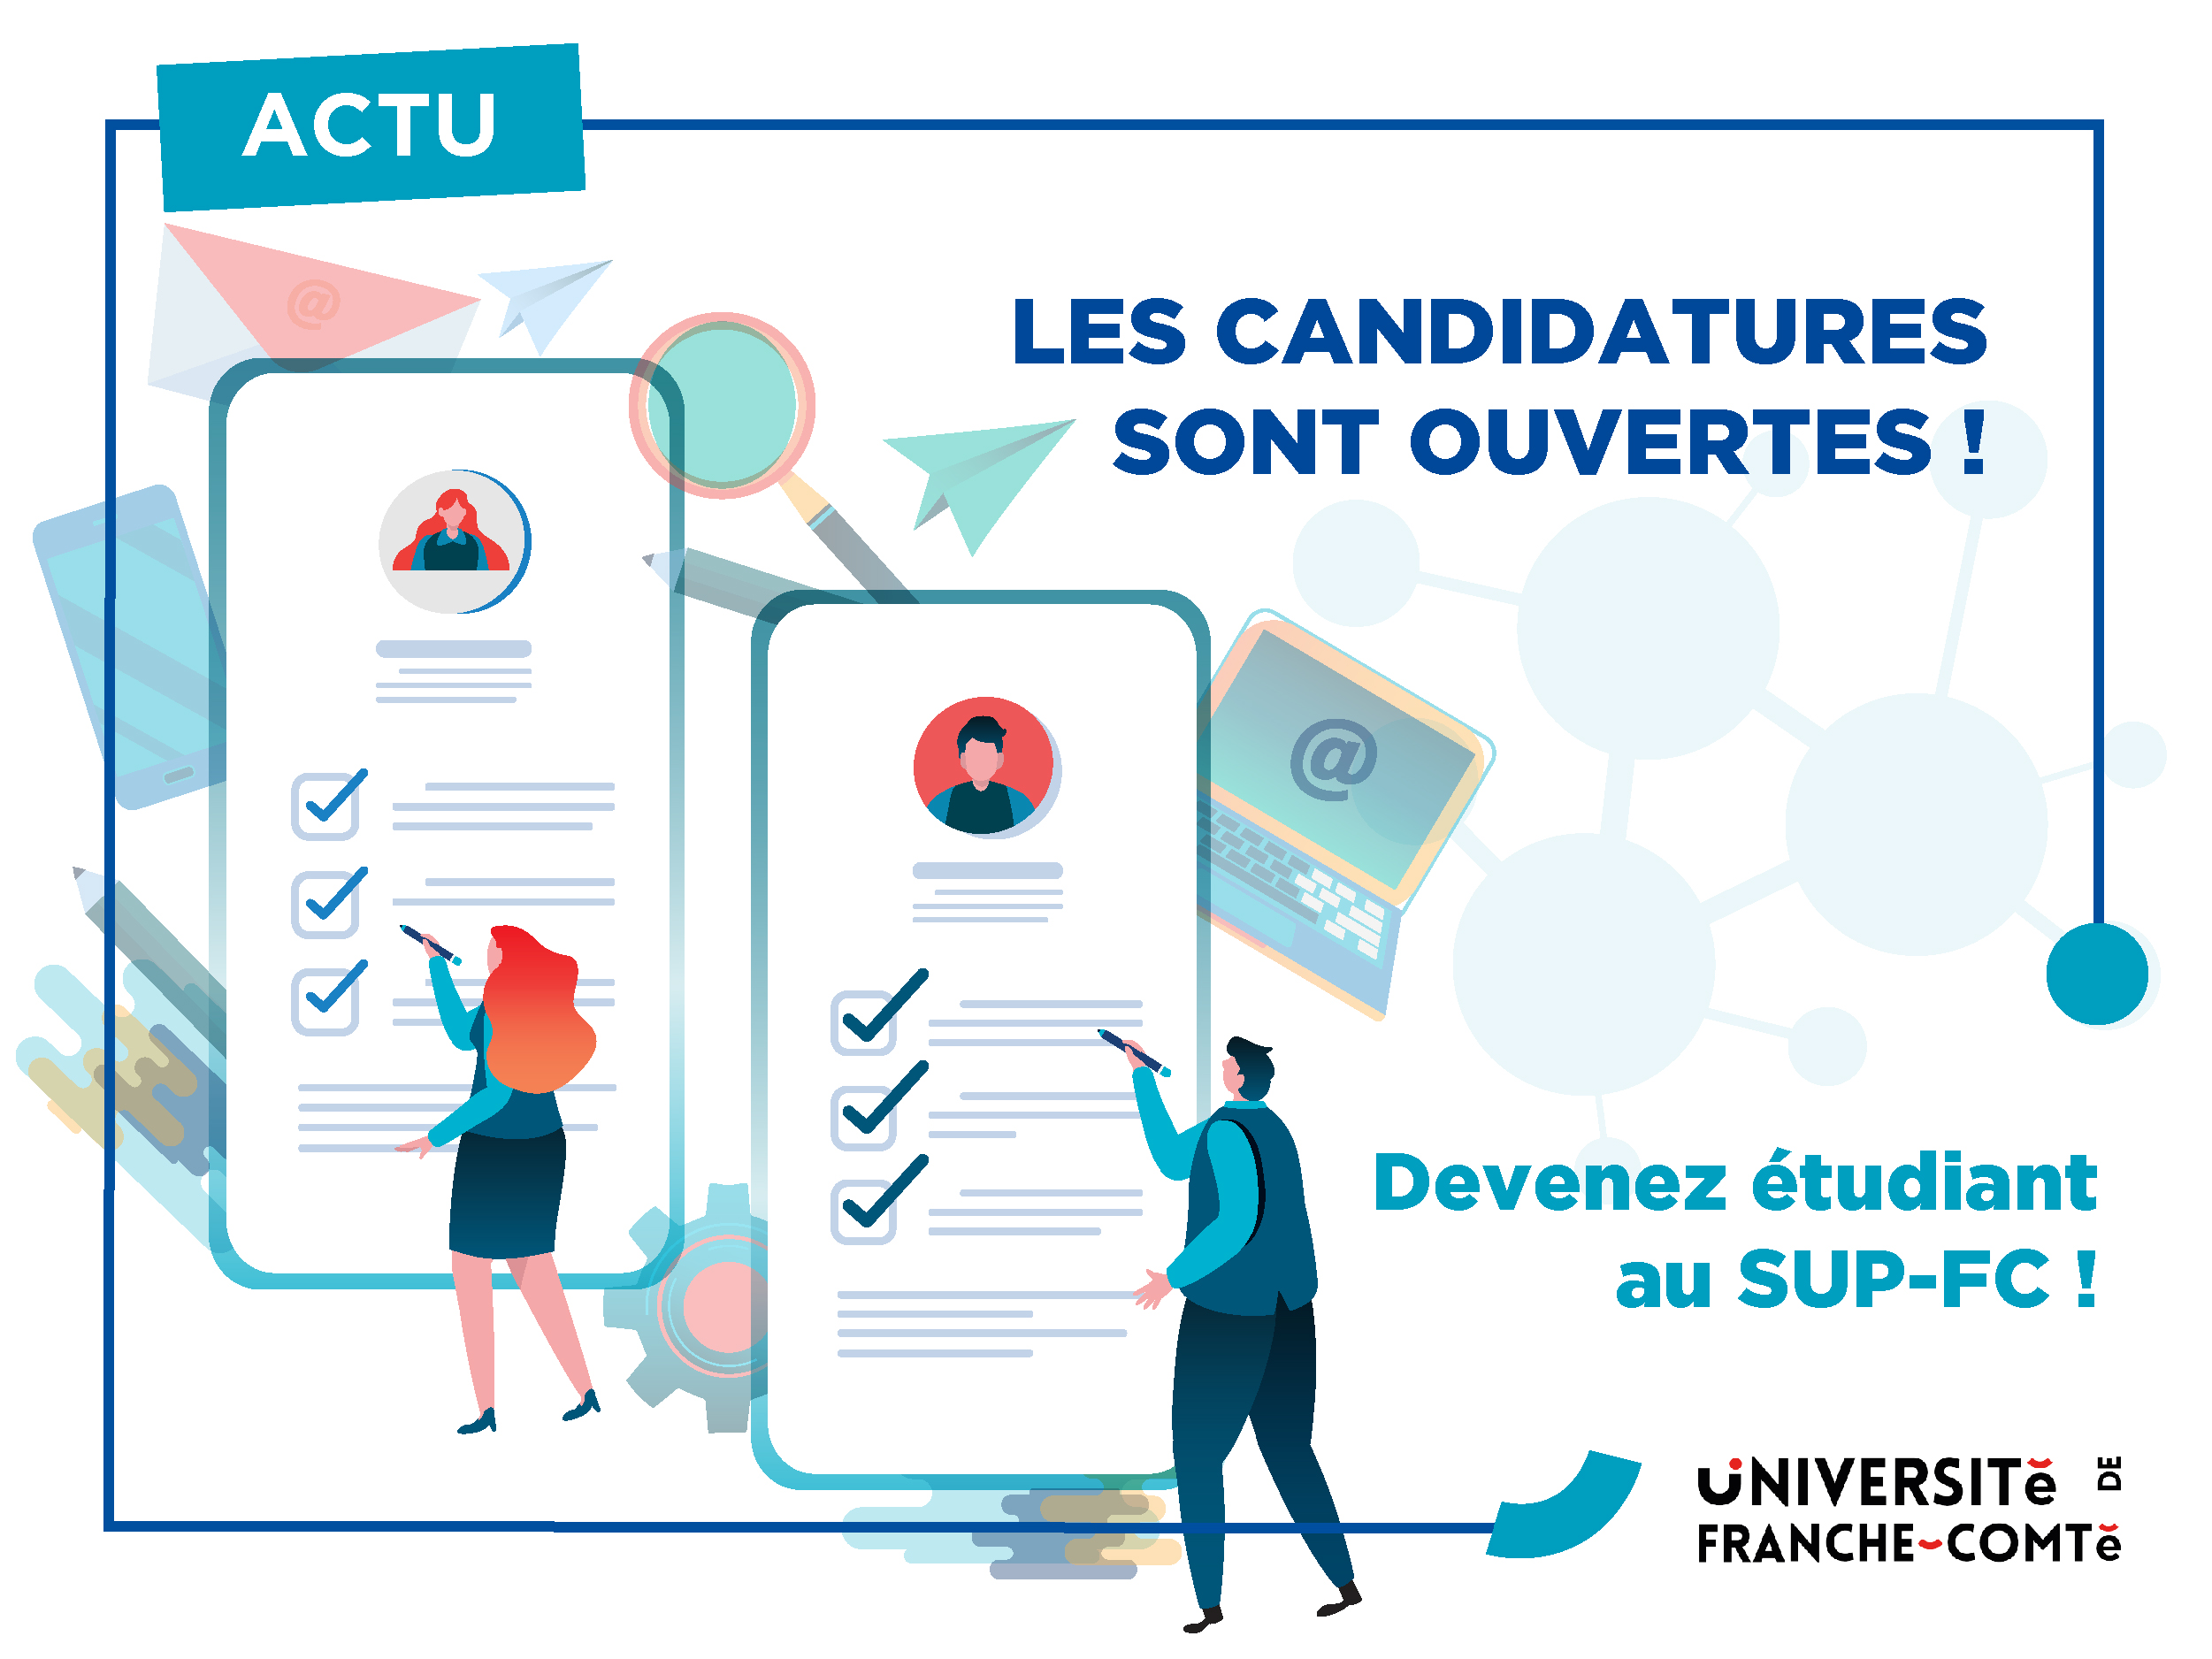 SUP-FC CTU ACTUcandidature